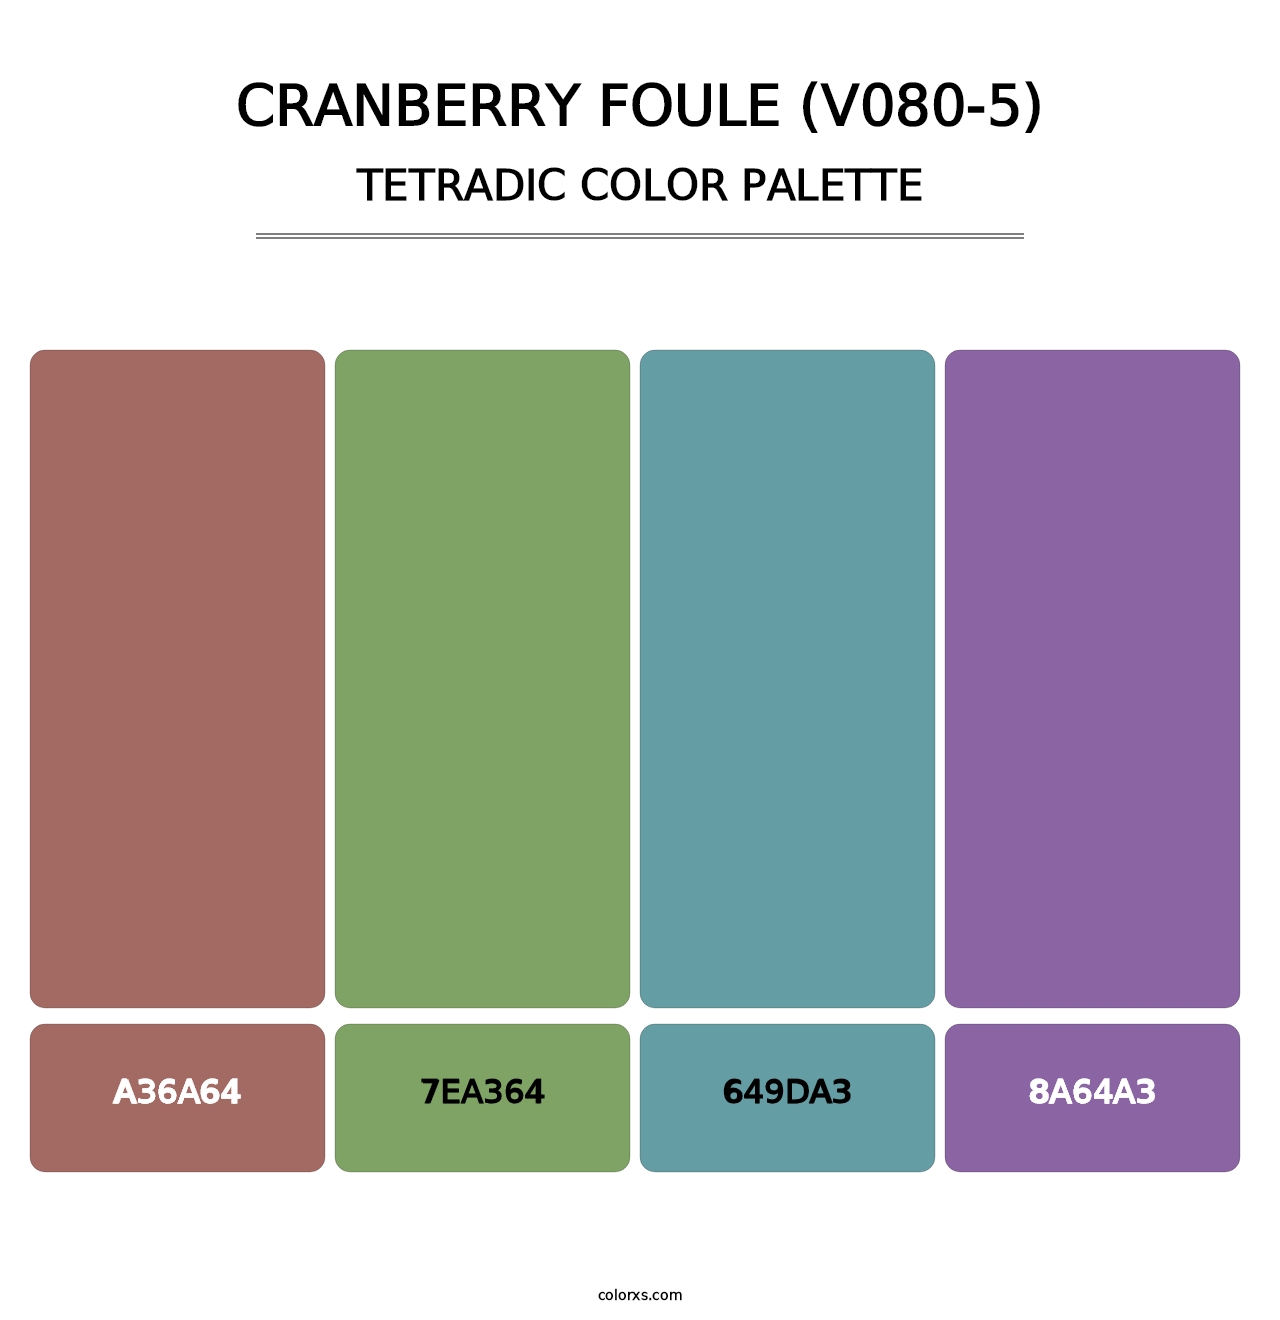 Cranberry Foule (V080-5) - Tetradic Color Palette